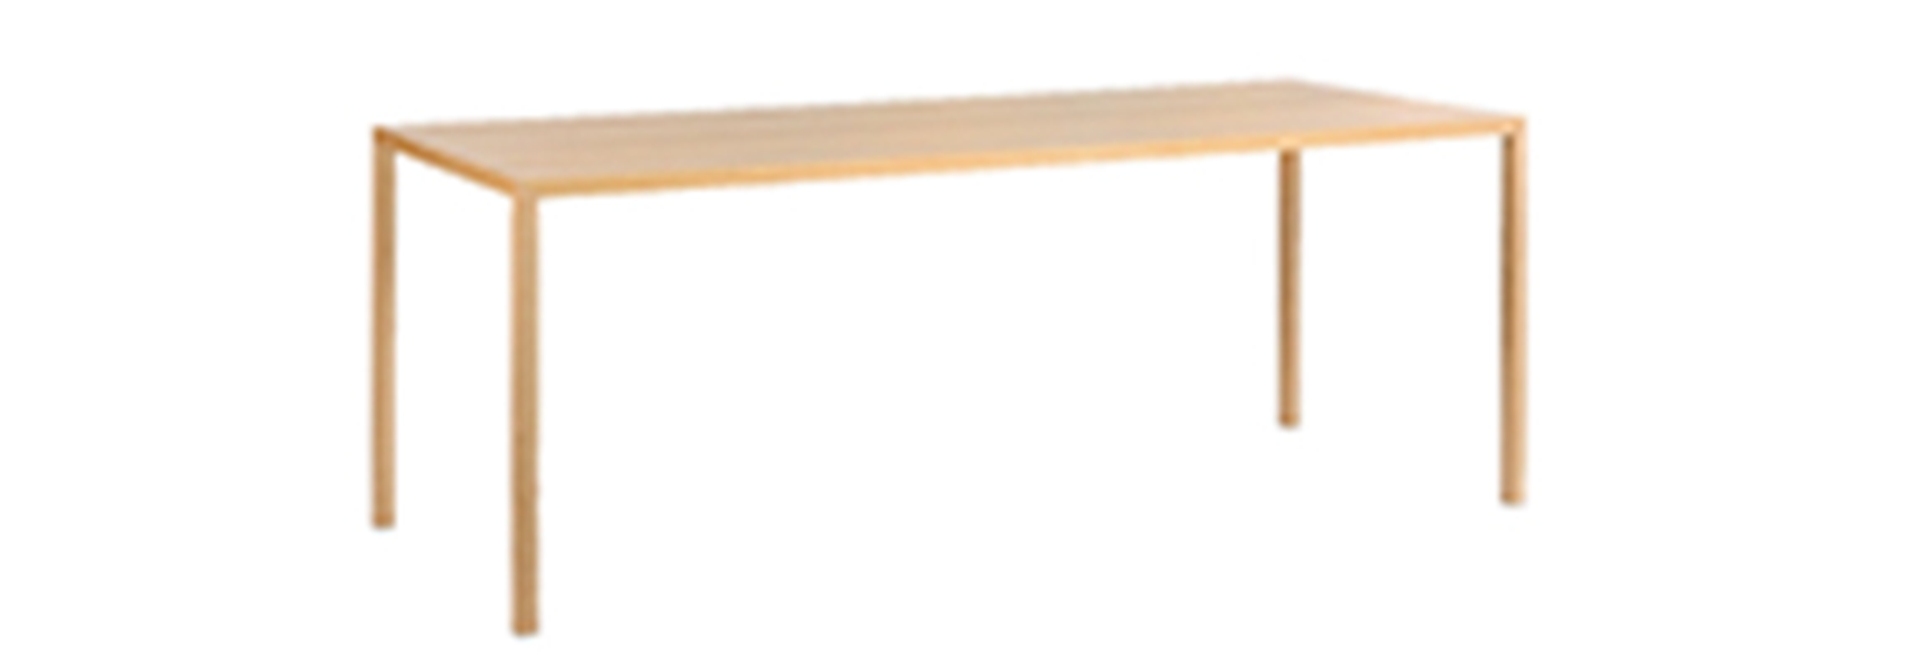 Der schlichte Tisch Cloud der Marke Jan Kurtz überzeugt mit seinem zeitlosen Design. Gefertigt wurde der Tisch aus Echtholzfurnier und hat eine natürliche Farbe. Die Länge des Tisches ist 200 cm.